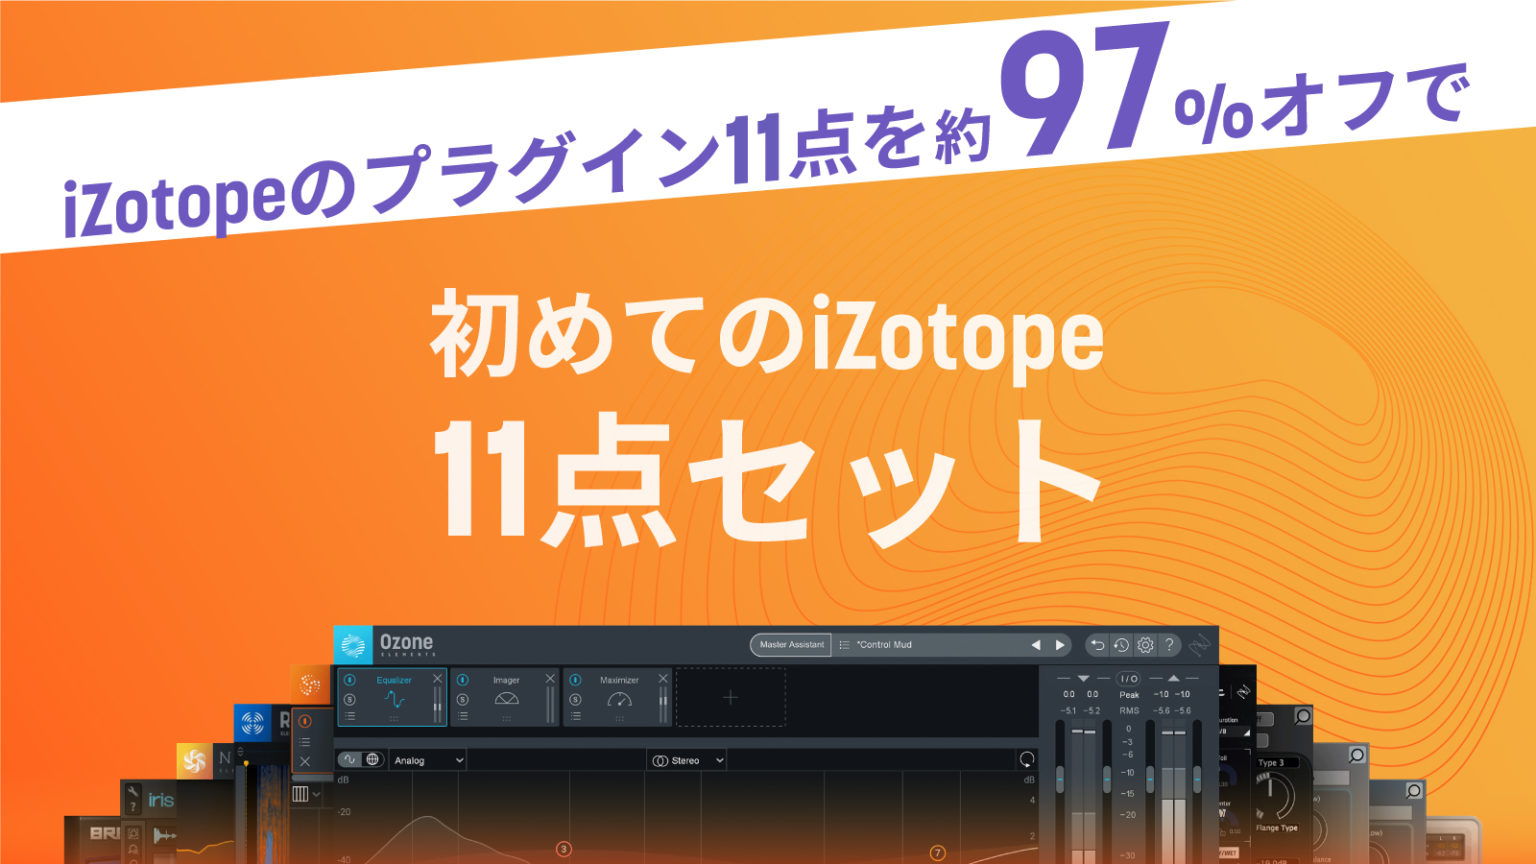 【音楽制作】日本限定 “初めてのiZotope11点セット+3” キャンペーン | 14製品セットが97%オフ